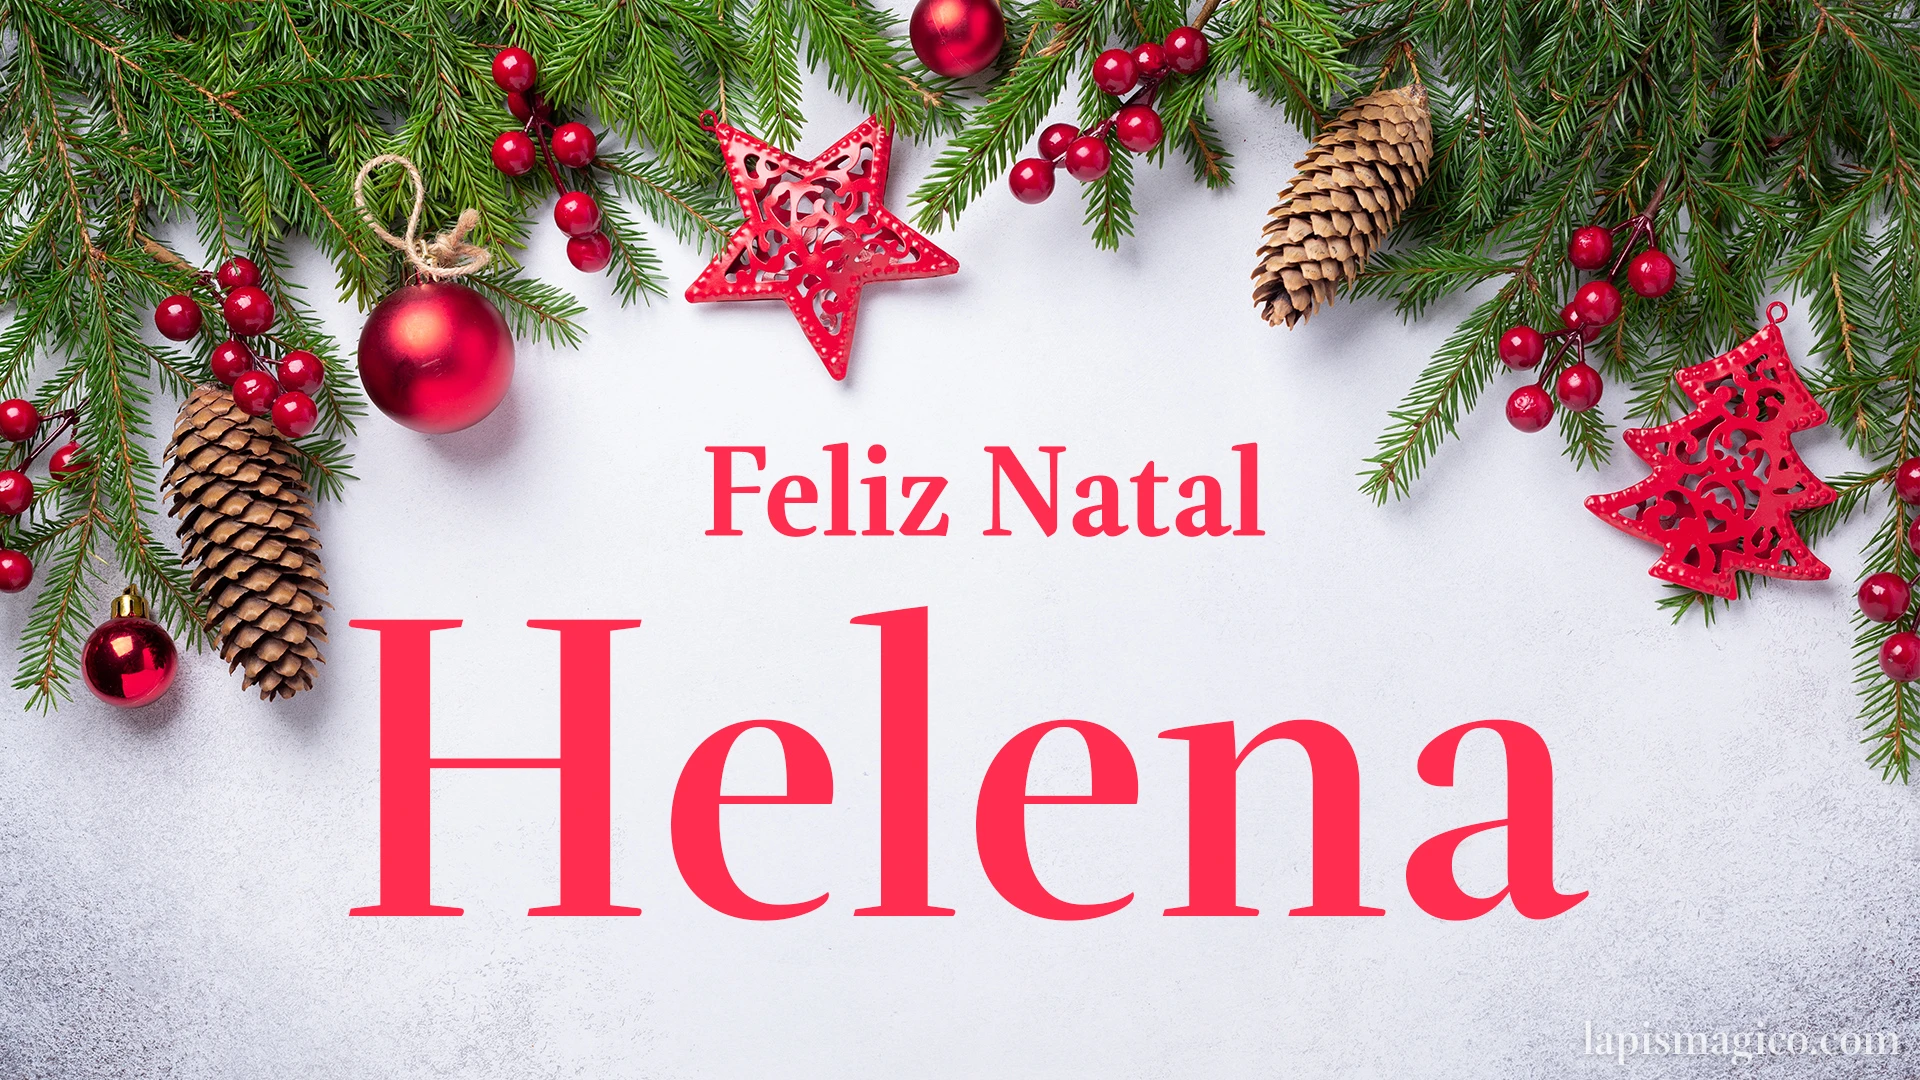 Oh Helena, cinco postais de Feliz Natal Postal com o teu nome